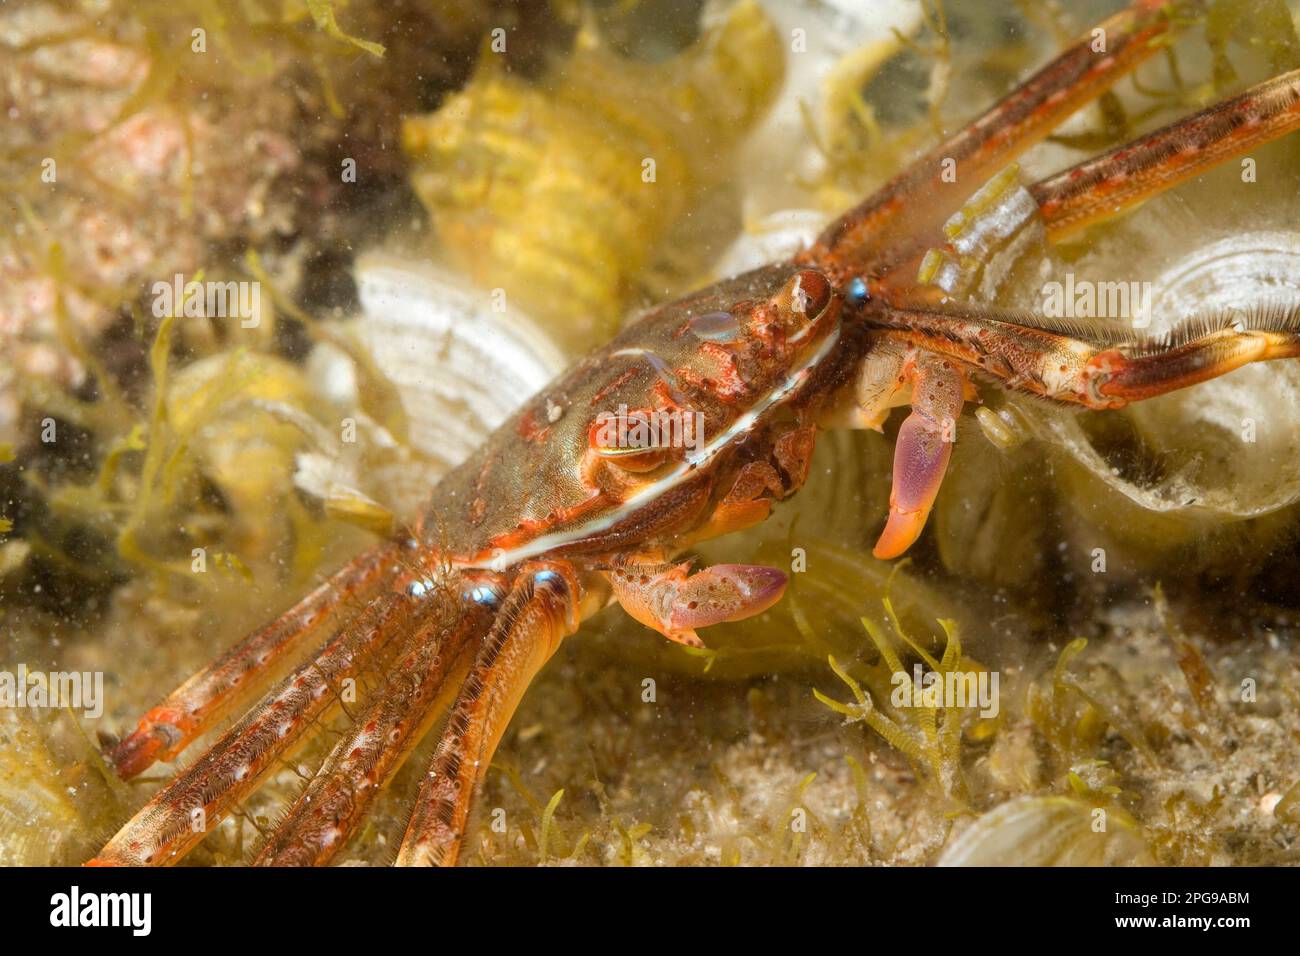 Flat crab (Percnon gibbesi). Stock Photo